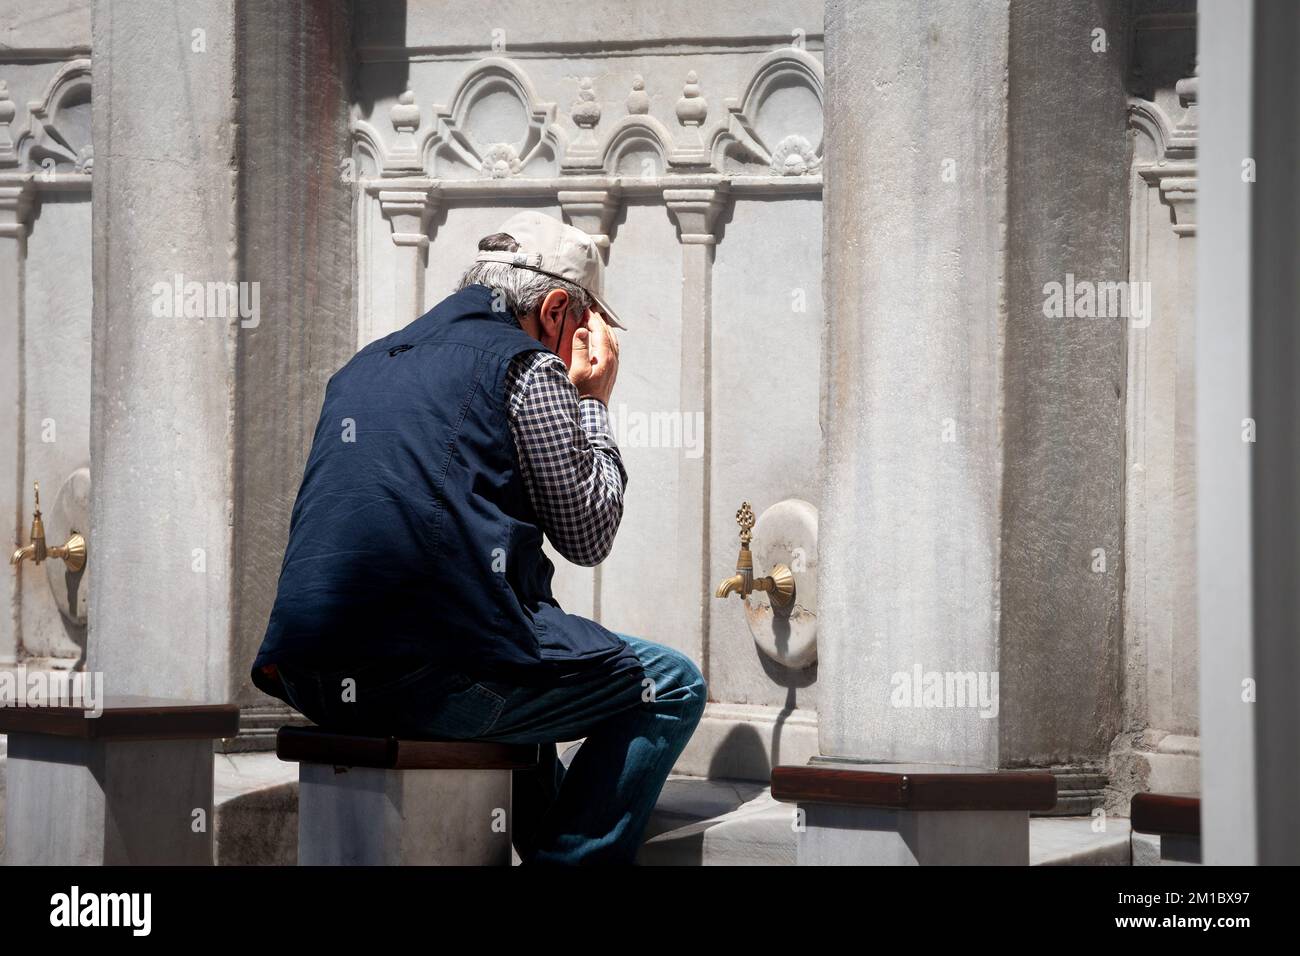 Immagine di un uomo che si lava il volto durante le abluzioni musulmane per prepararsi alla preghiera, di fronte ad una moschea, a istanbul, in turchia. Wudu è il p. Islamico Foto Stock